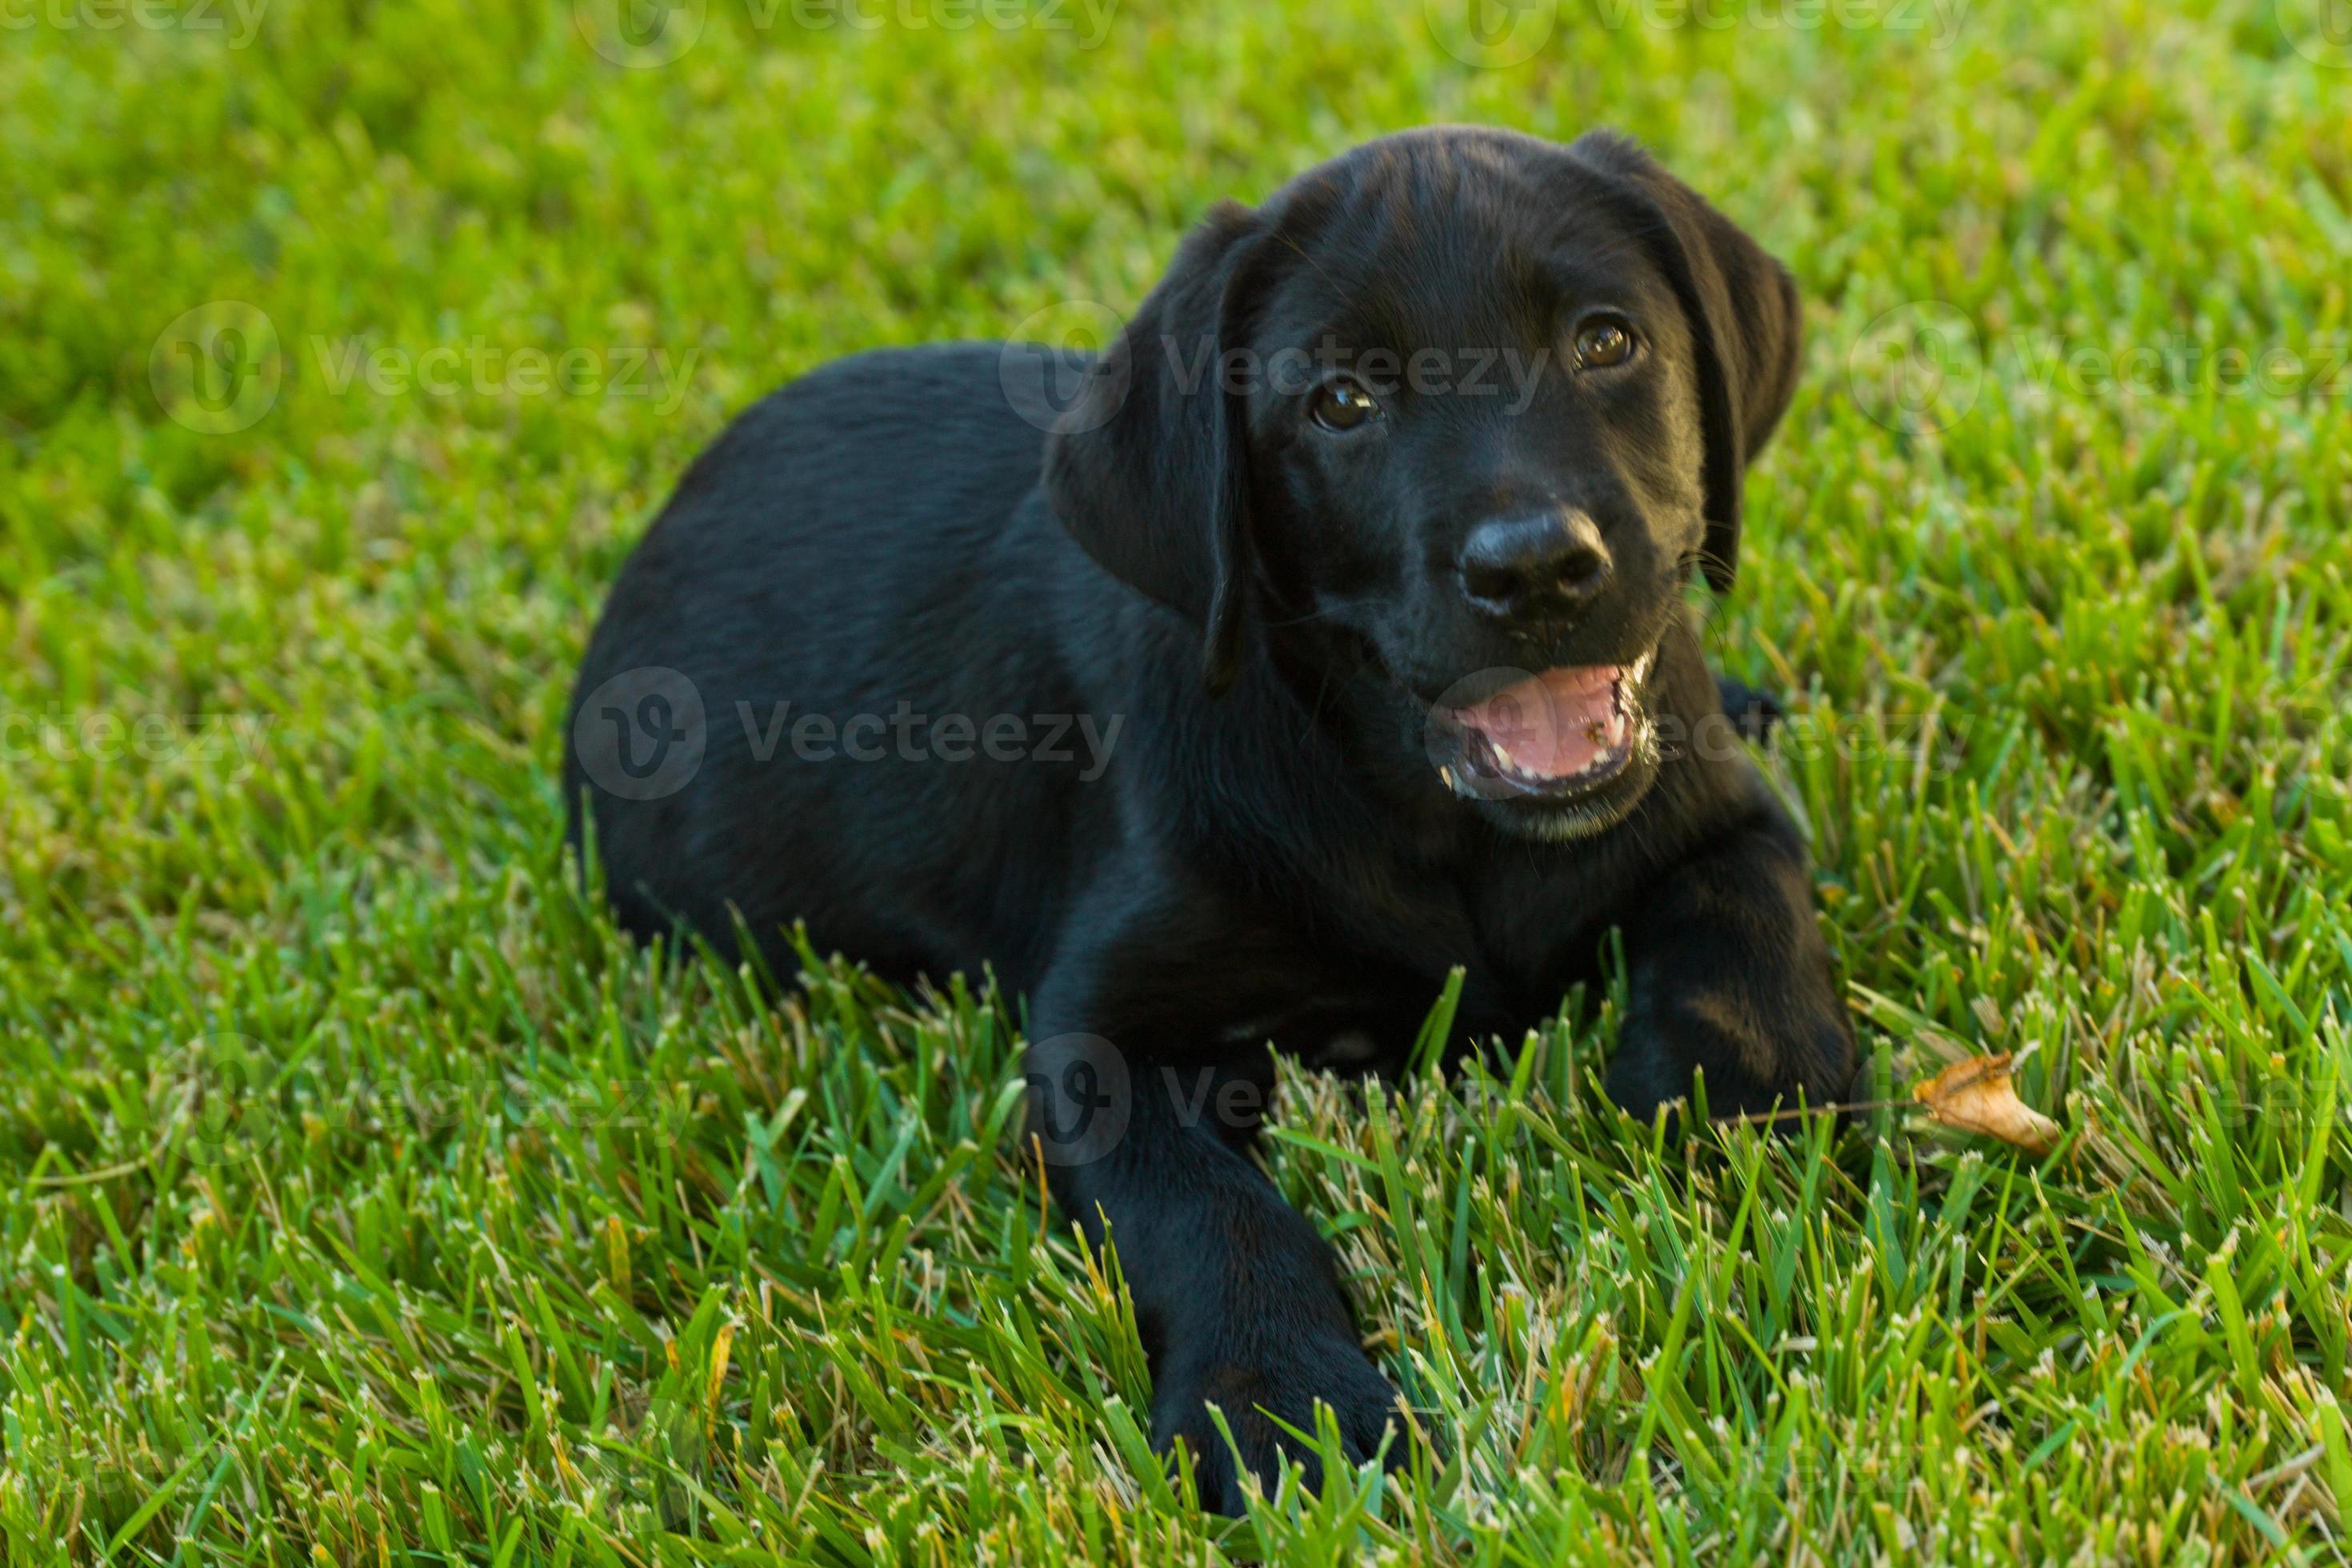 Vernietigen Aarzelen Op de kop van zwarte labrador retriever pup 1387121 Stockfoto